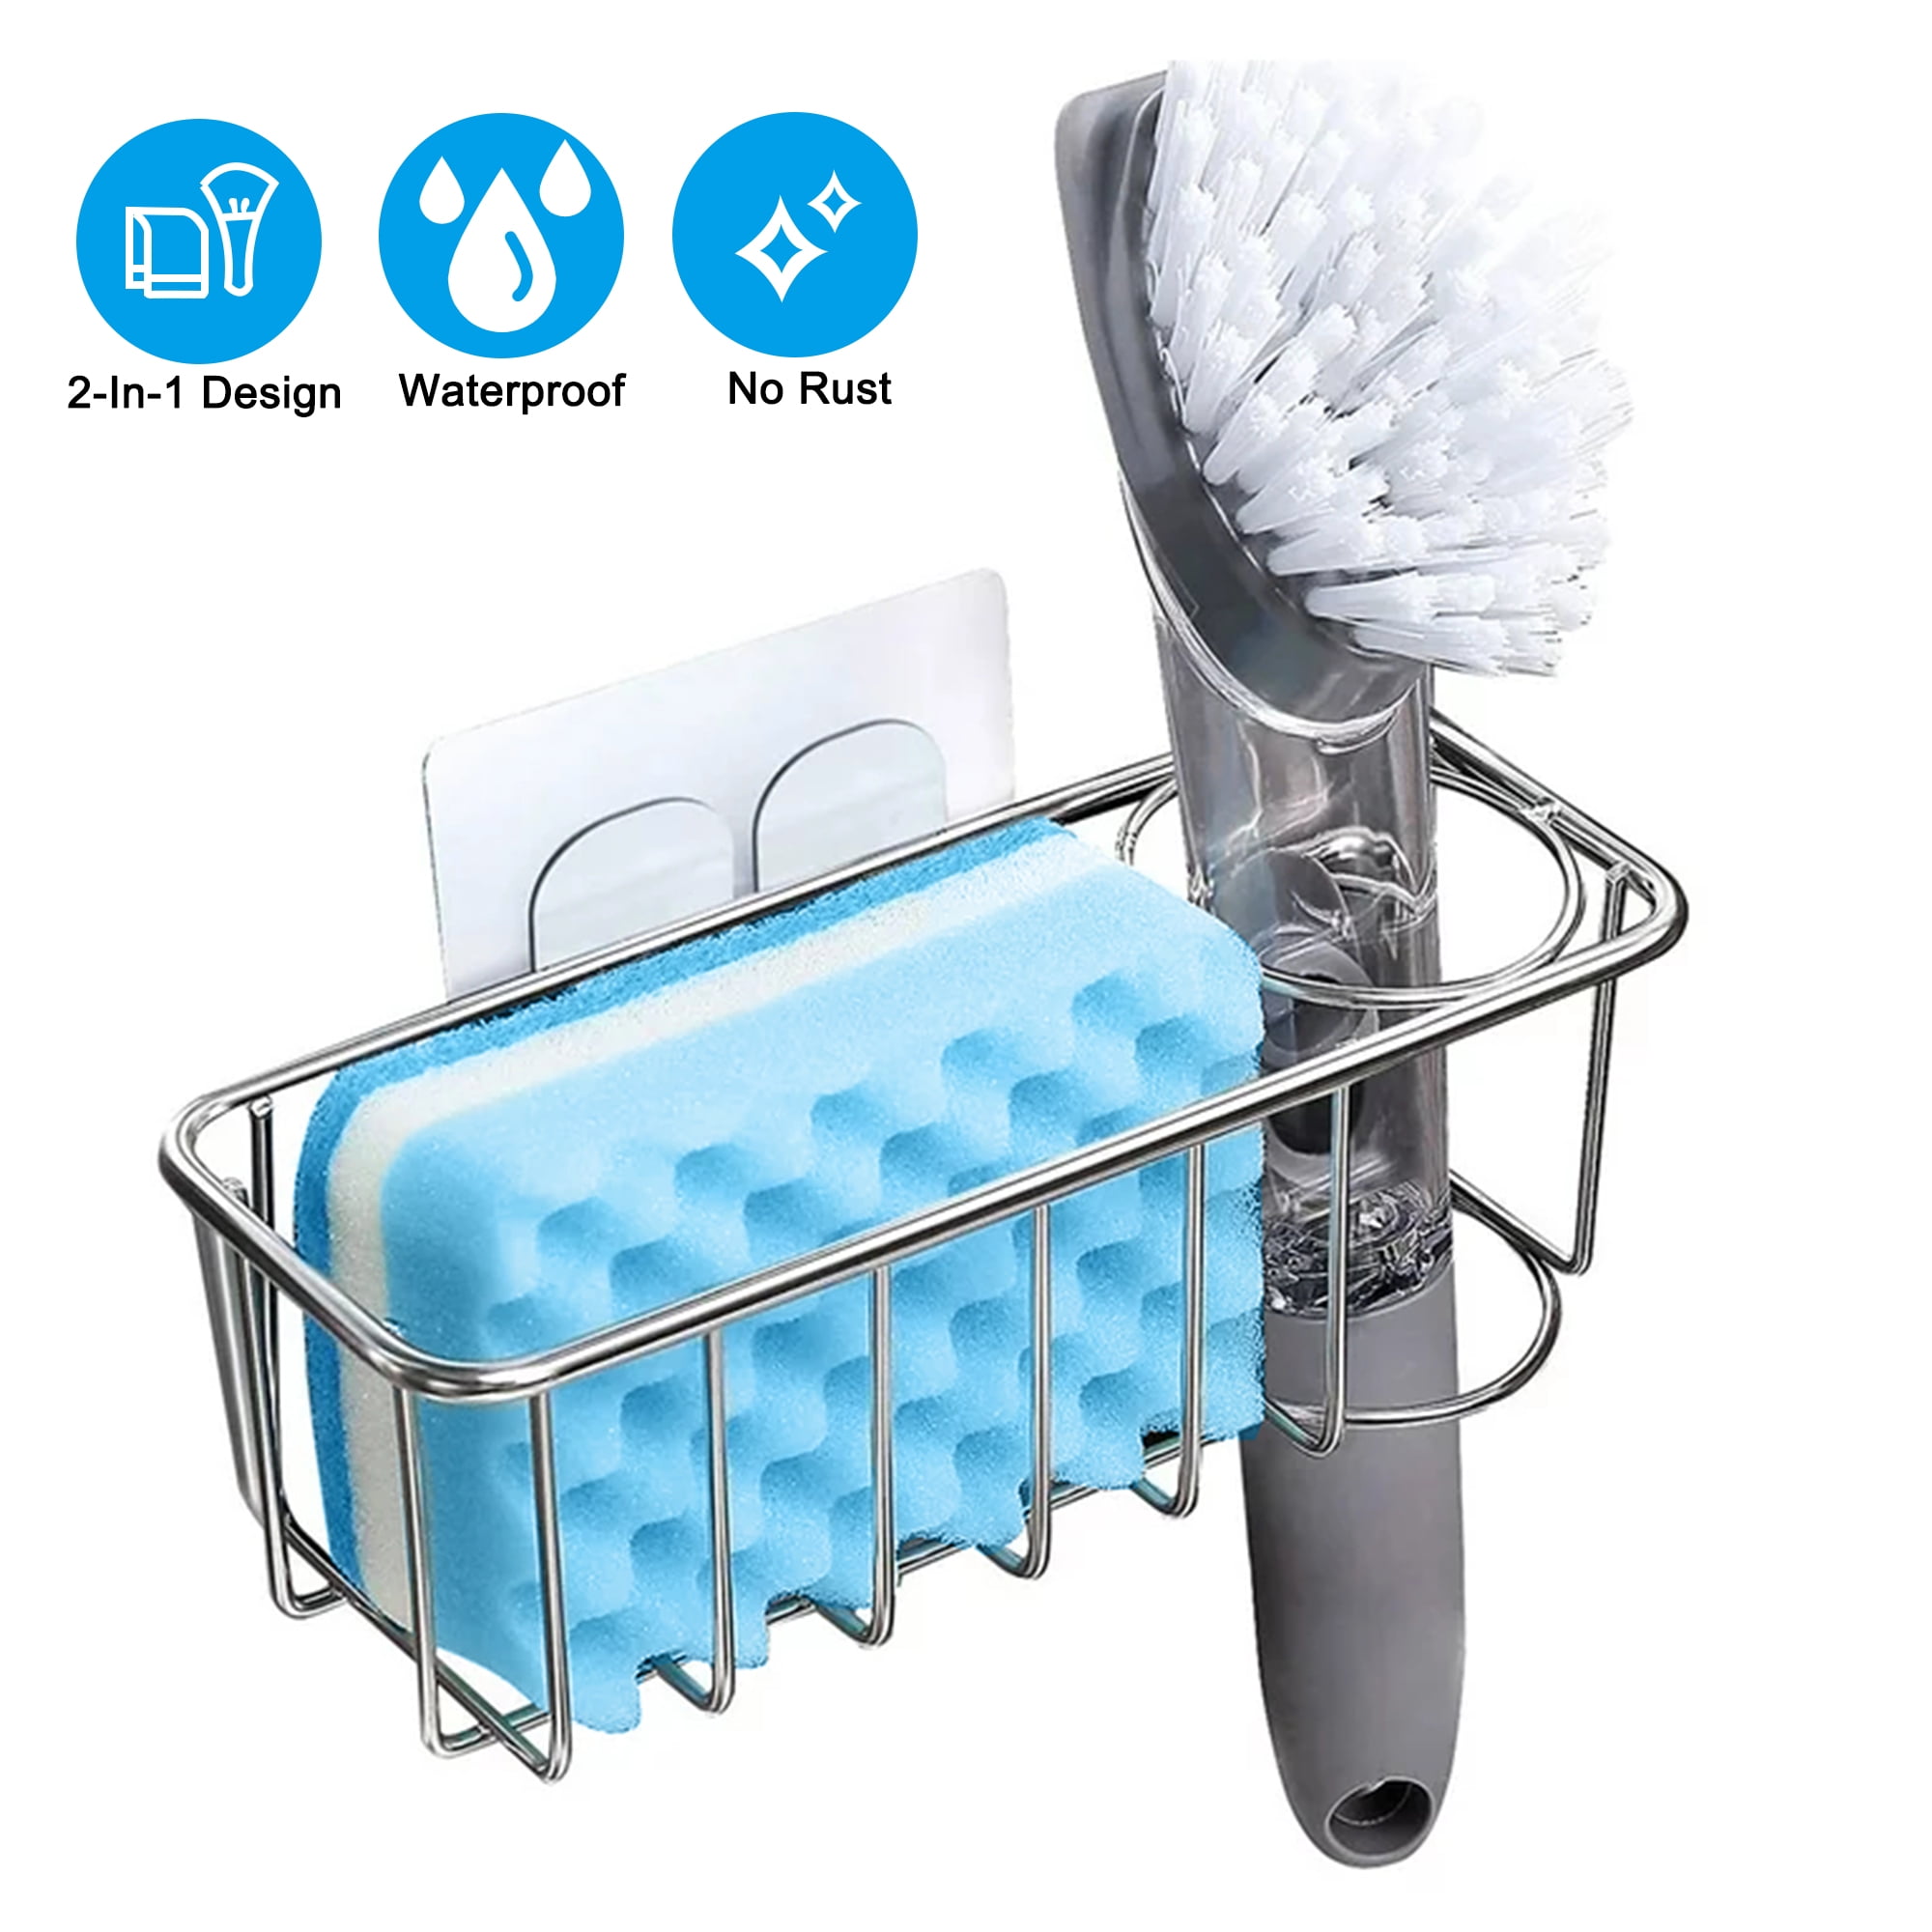 Easyinsmile kitchen sink caddy sponge holder scratcher holder cleaning brush  holder sink organizer(grey)